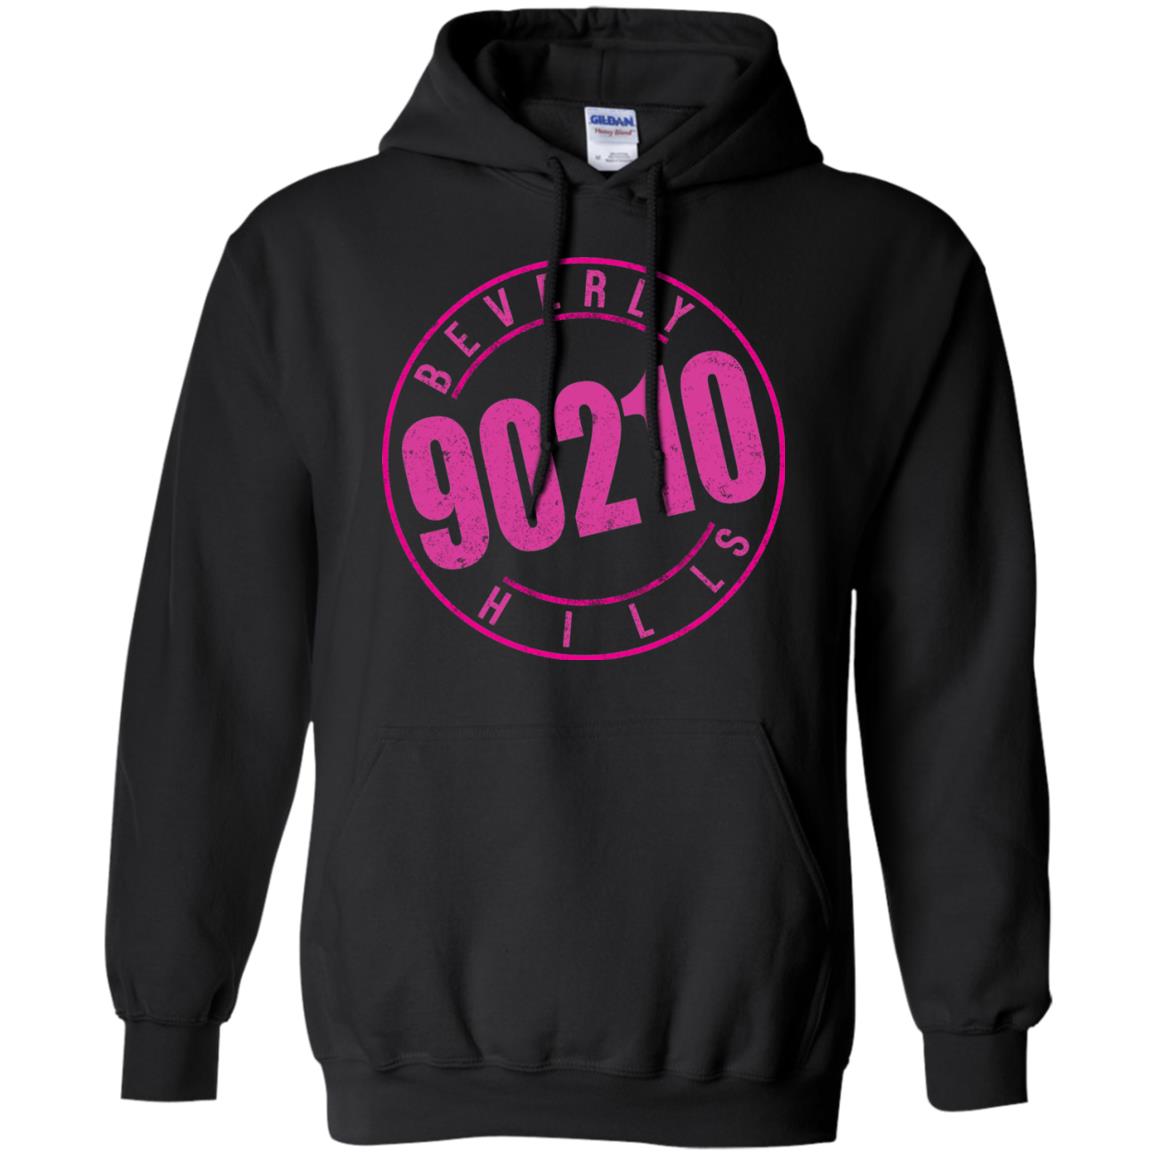 beverly hills 90210 hoodie - black